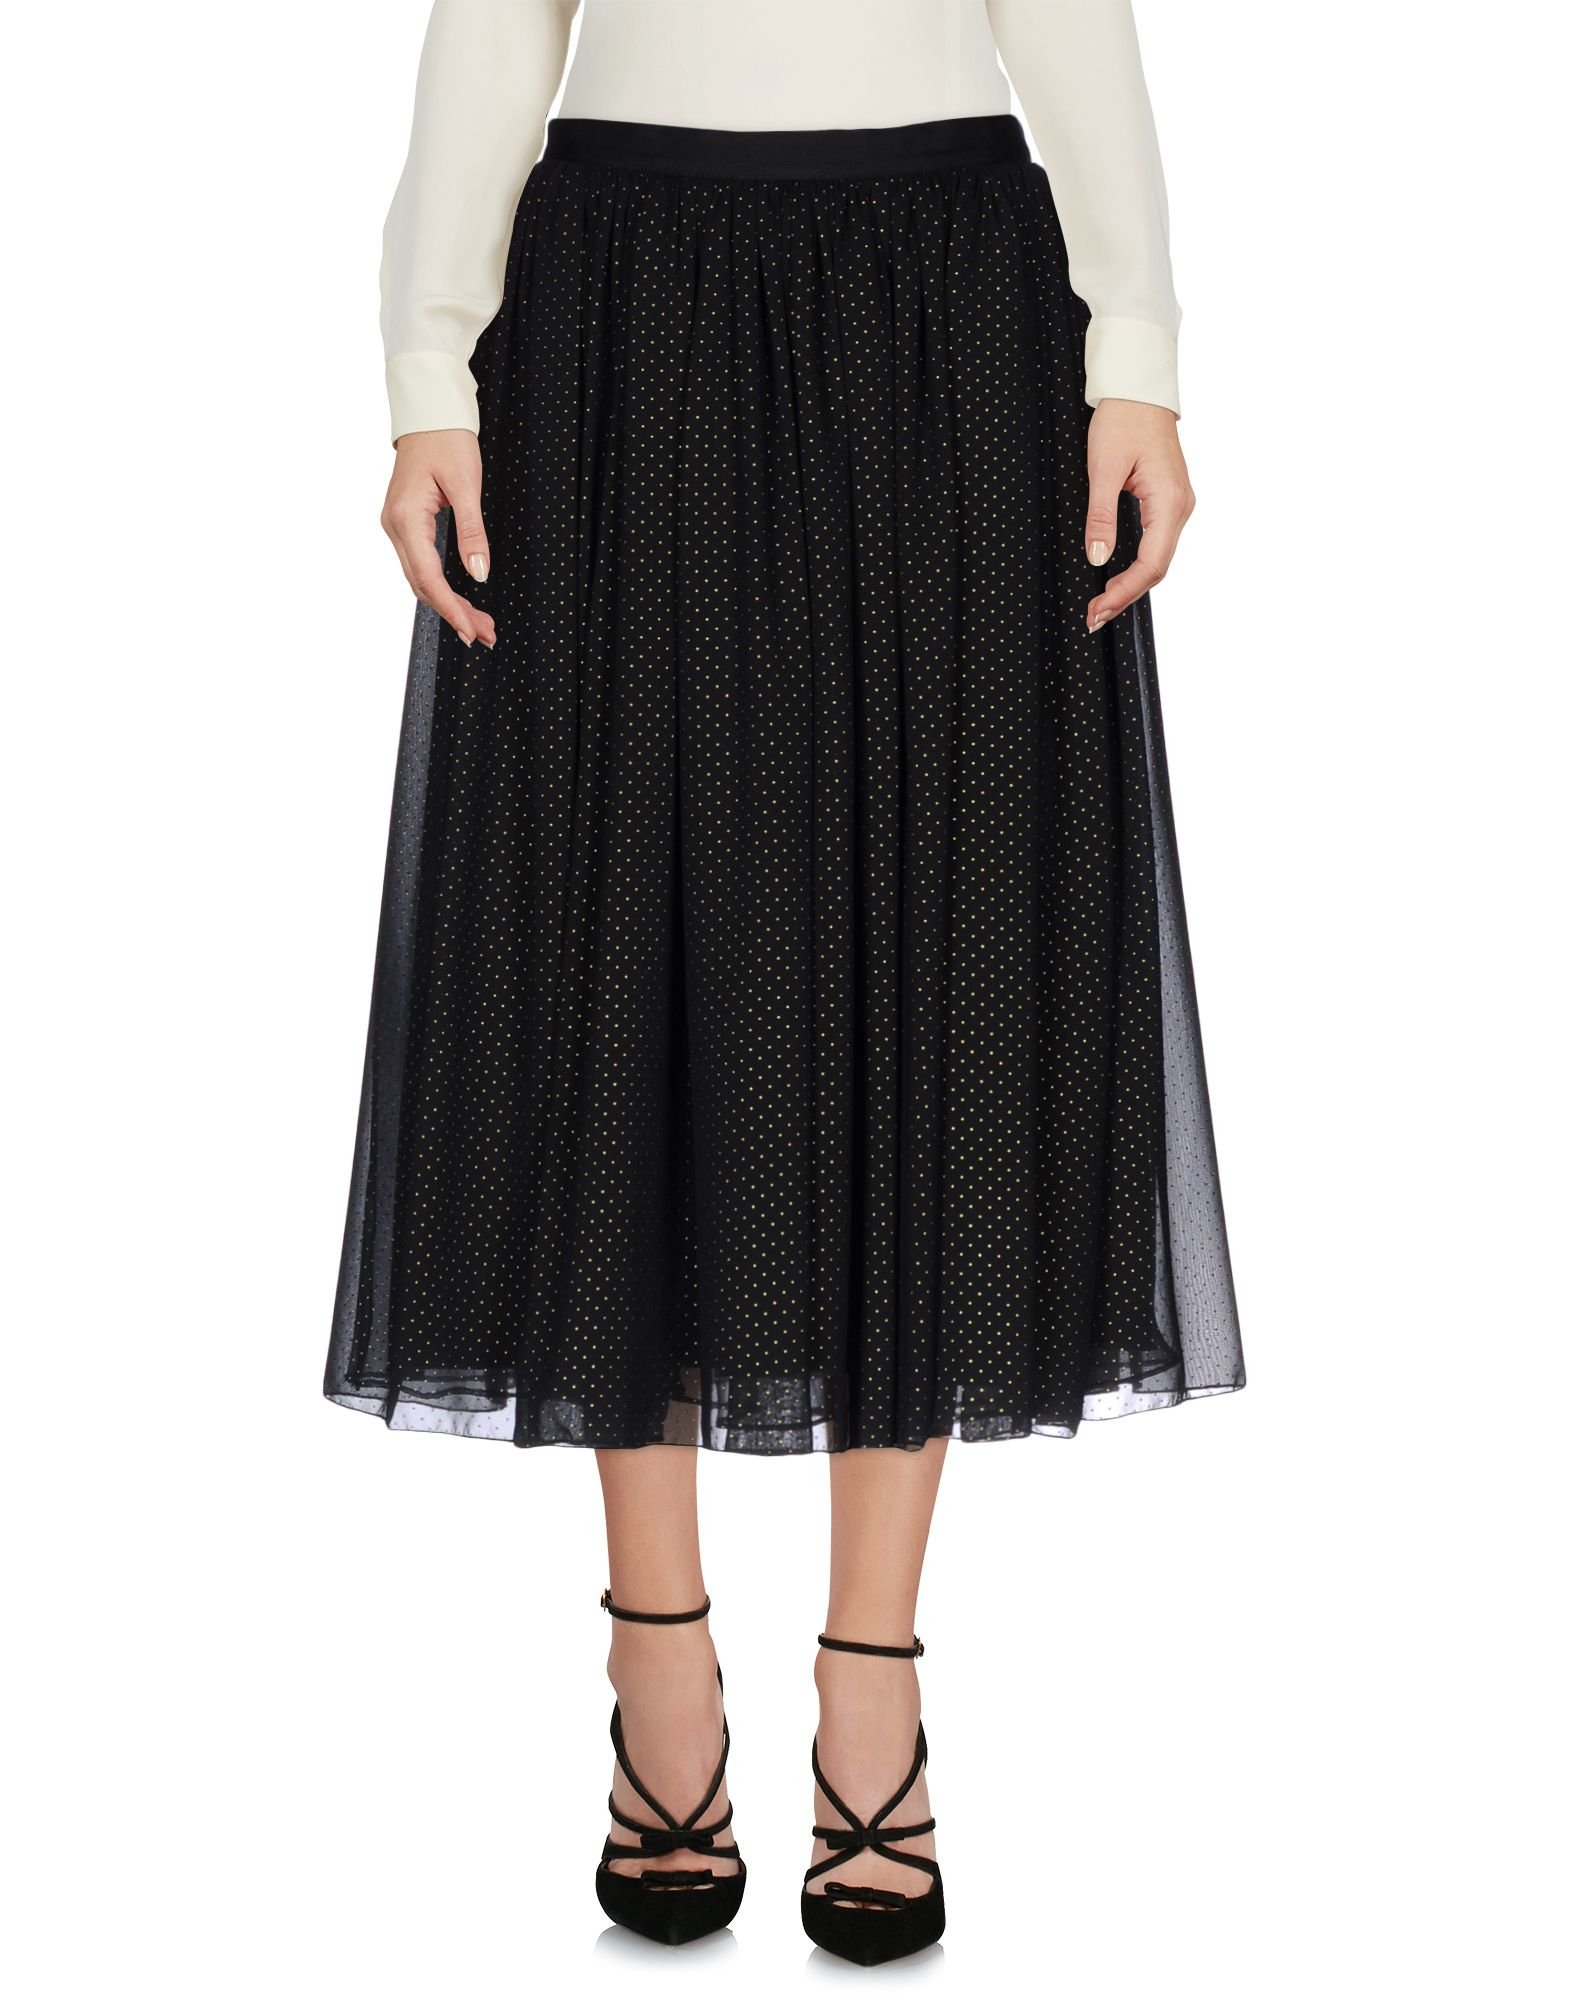 Lyst - Alice + olivia 3/4 Length Skirt in Black